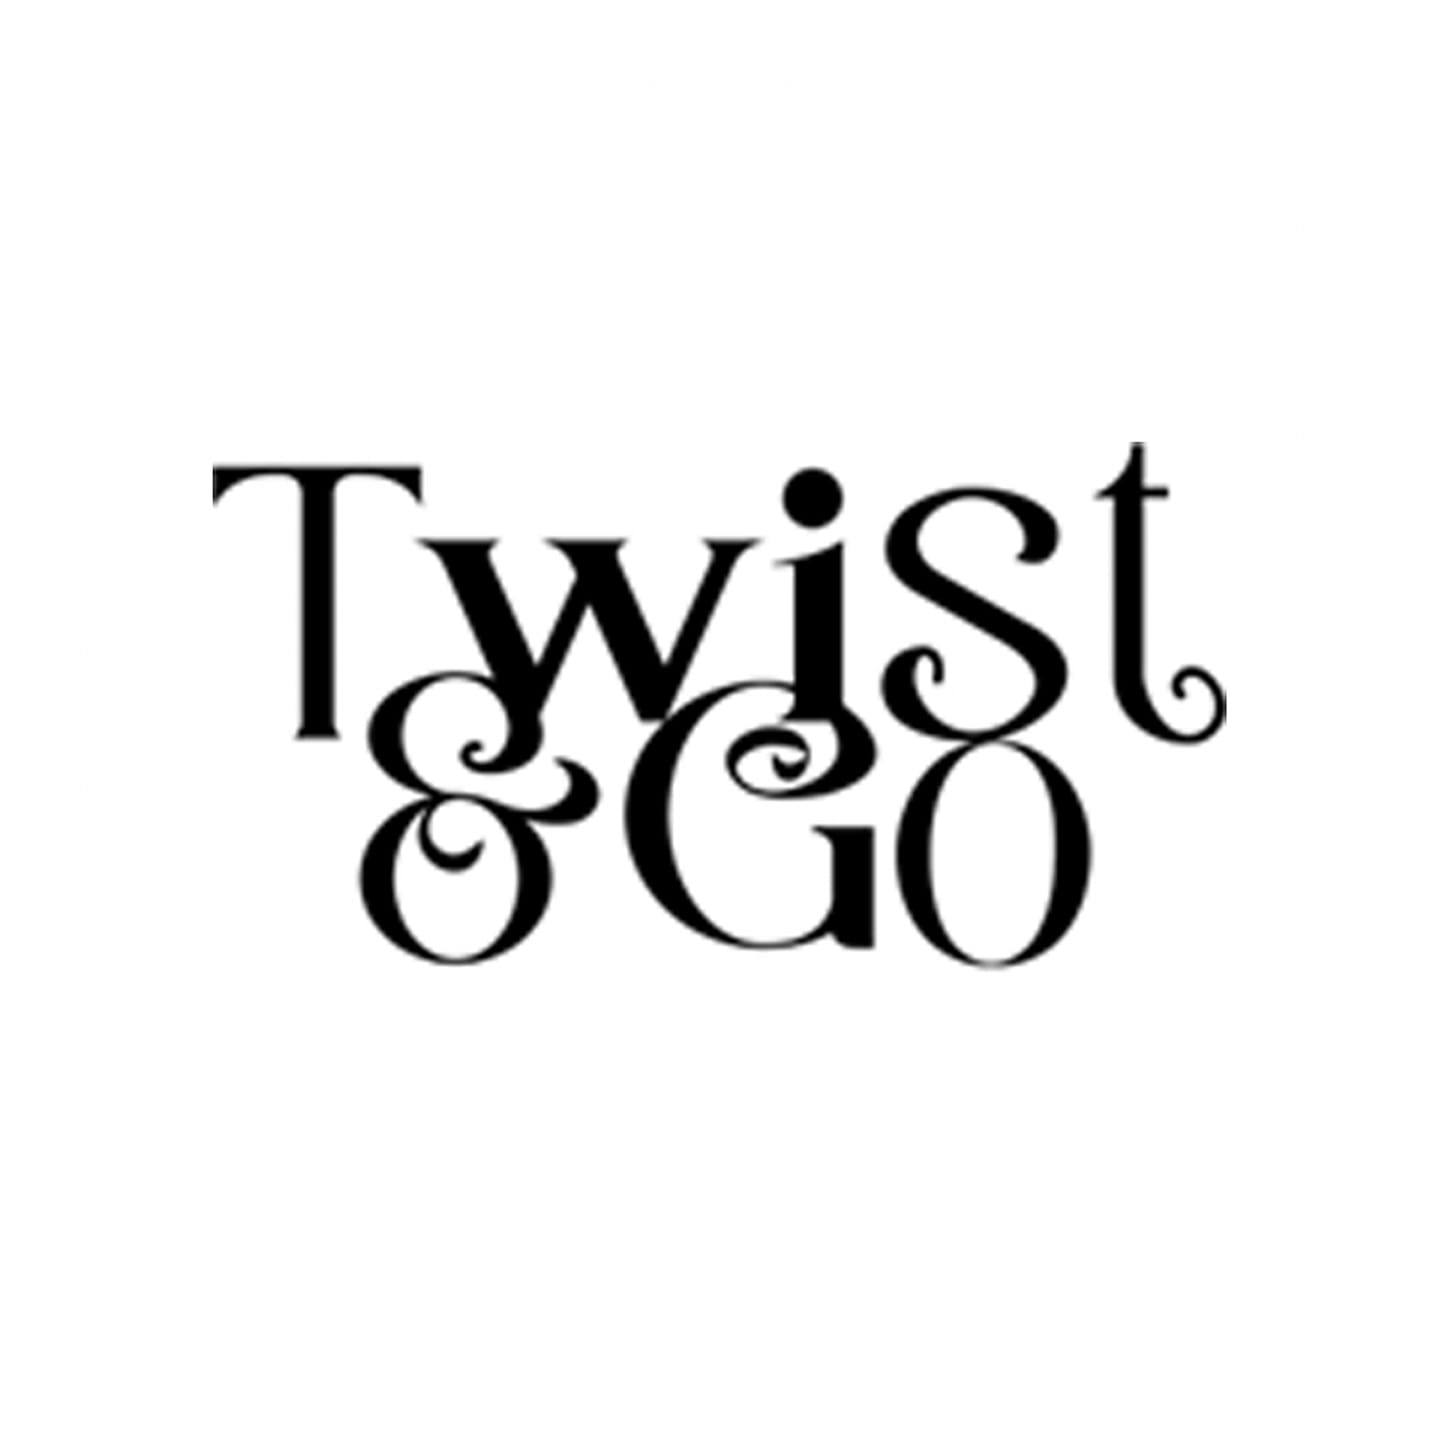 Twist & Go